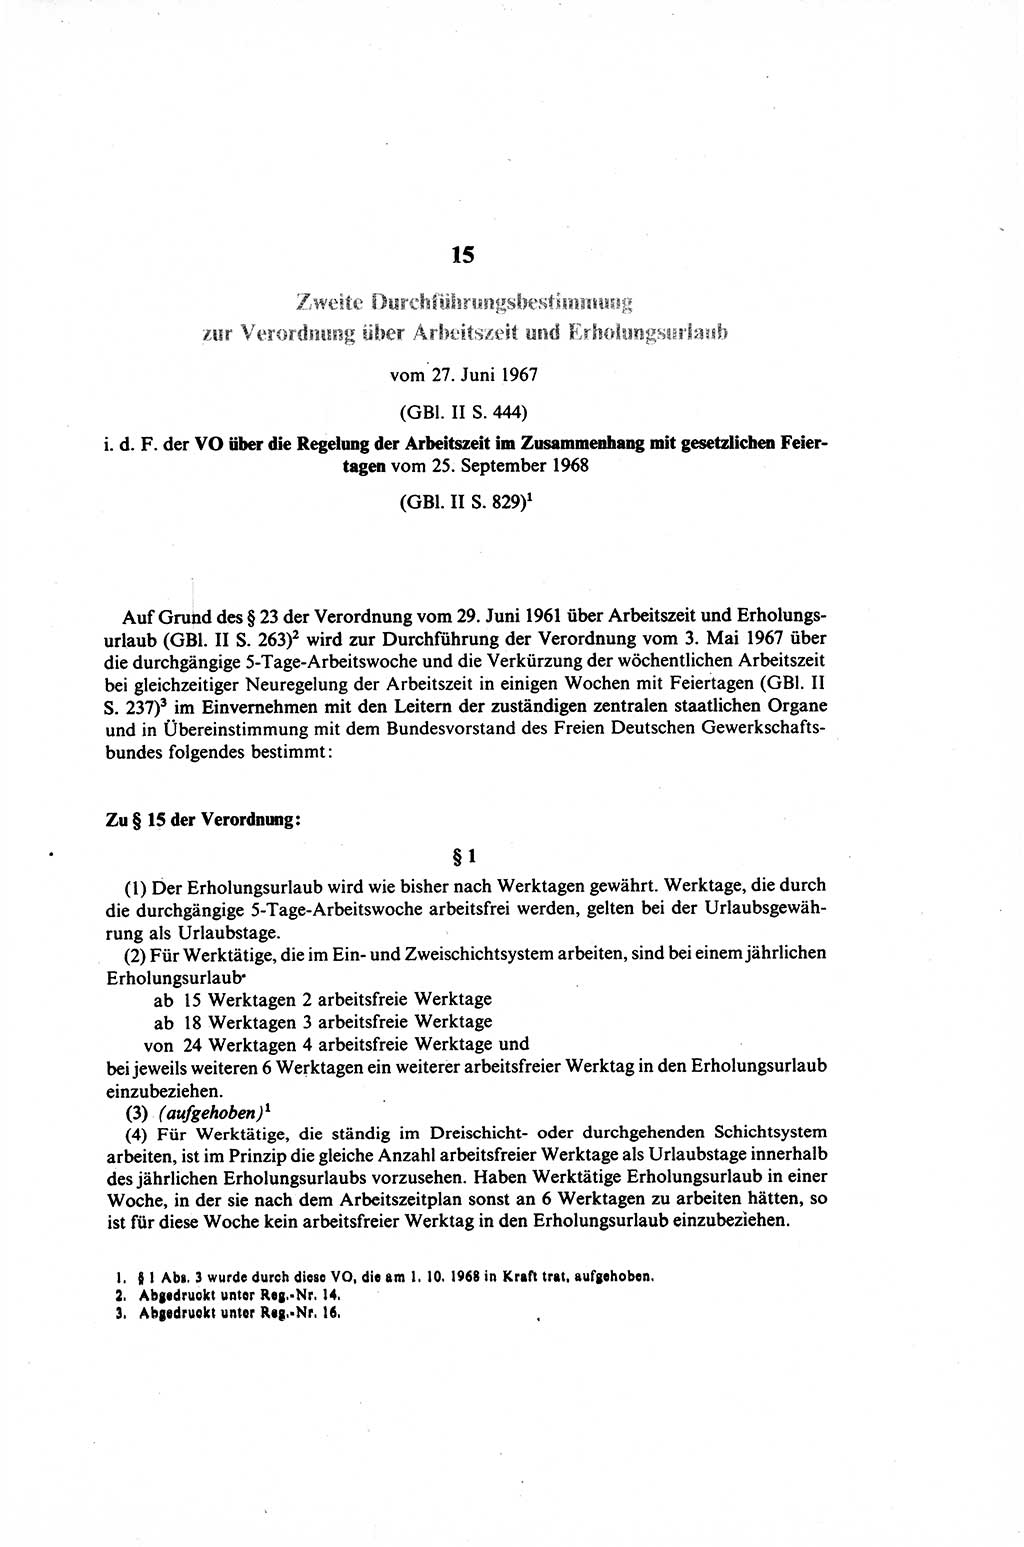 Gesetzbuch der Arbeit (GBA) und andere ausgewählte rechtliche Bestimmungen [Deutsche Demokratische Republik (DDR)] 1968, Seite 237 (GBA DDR 1968, S. 237)